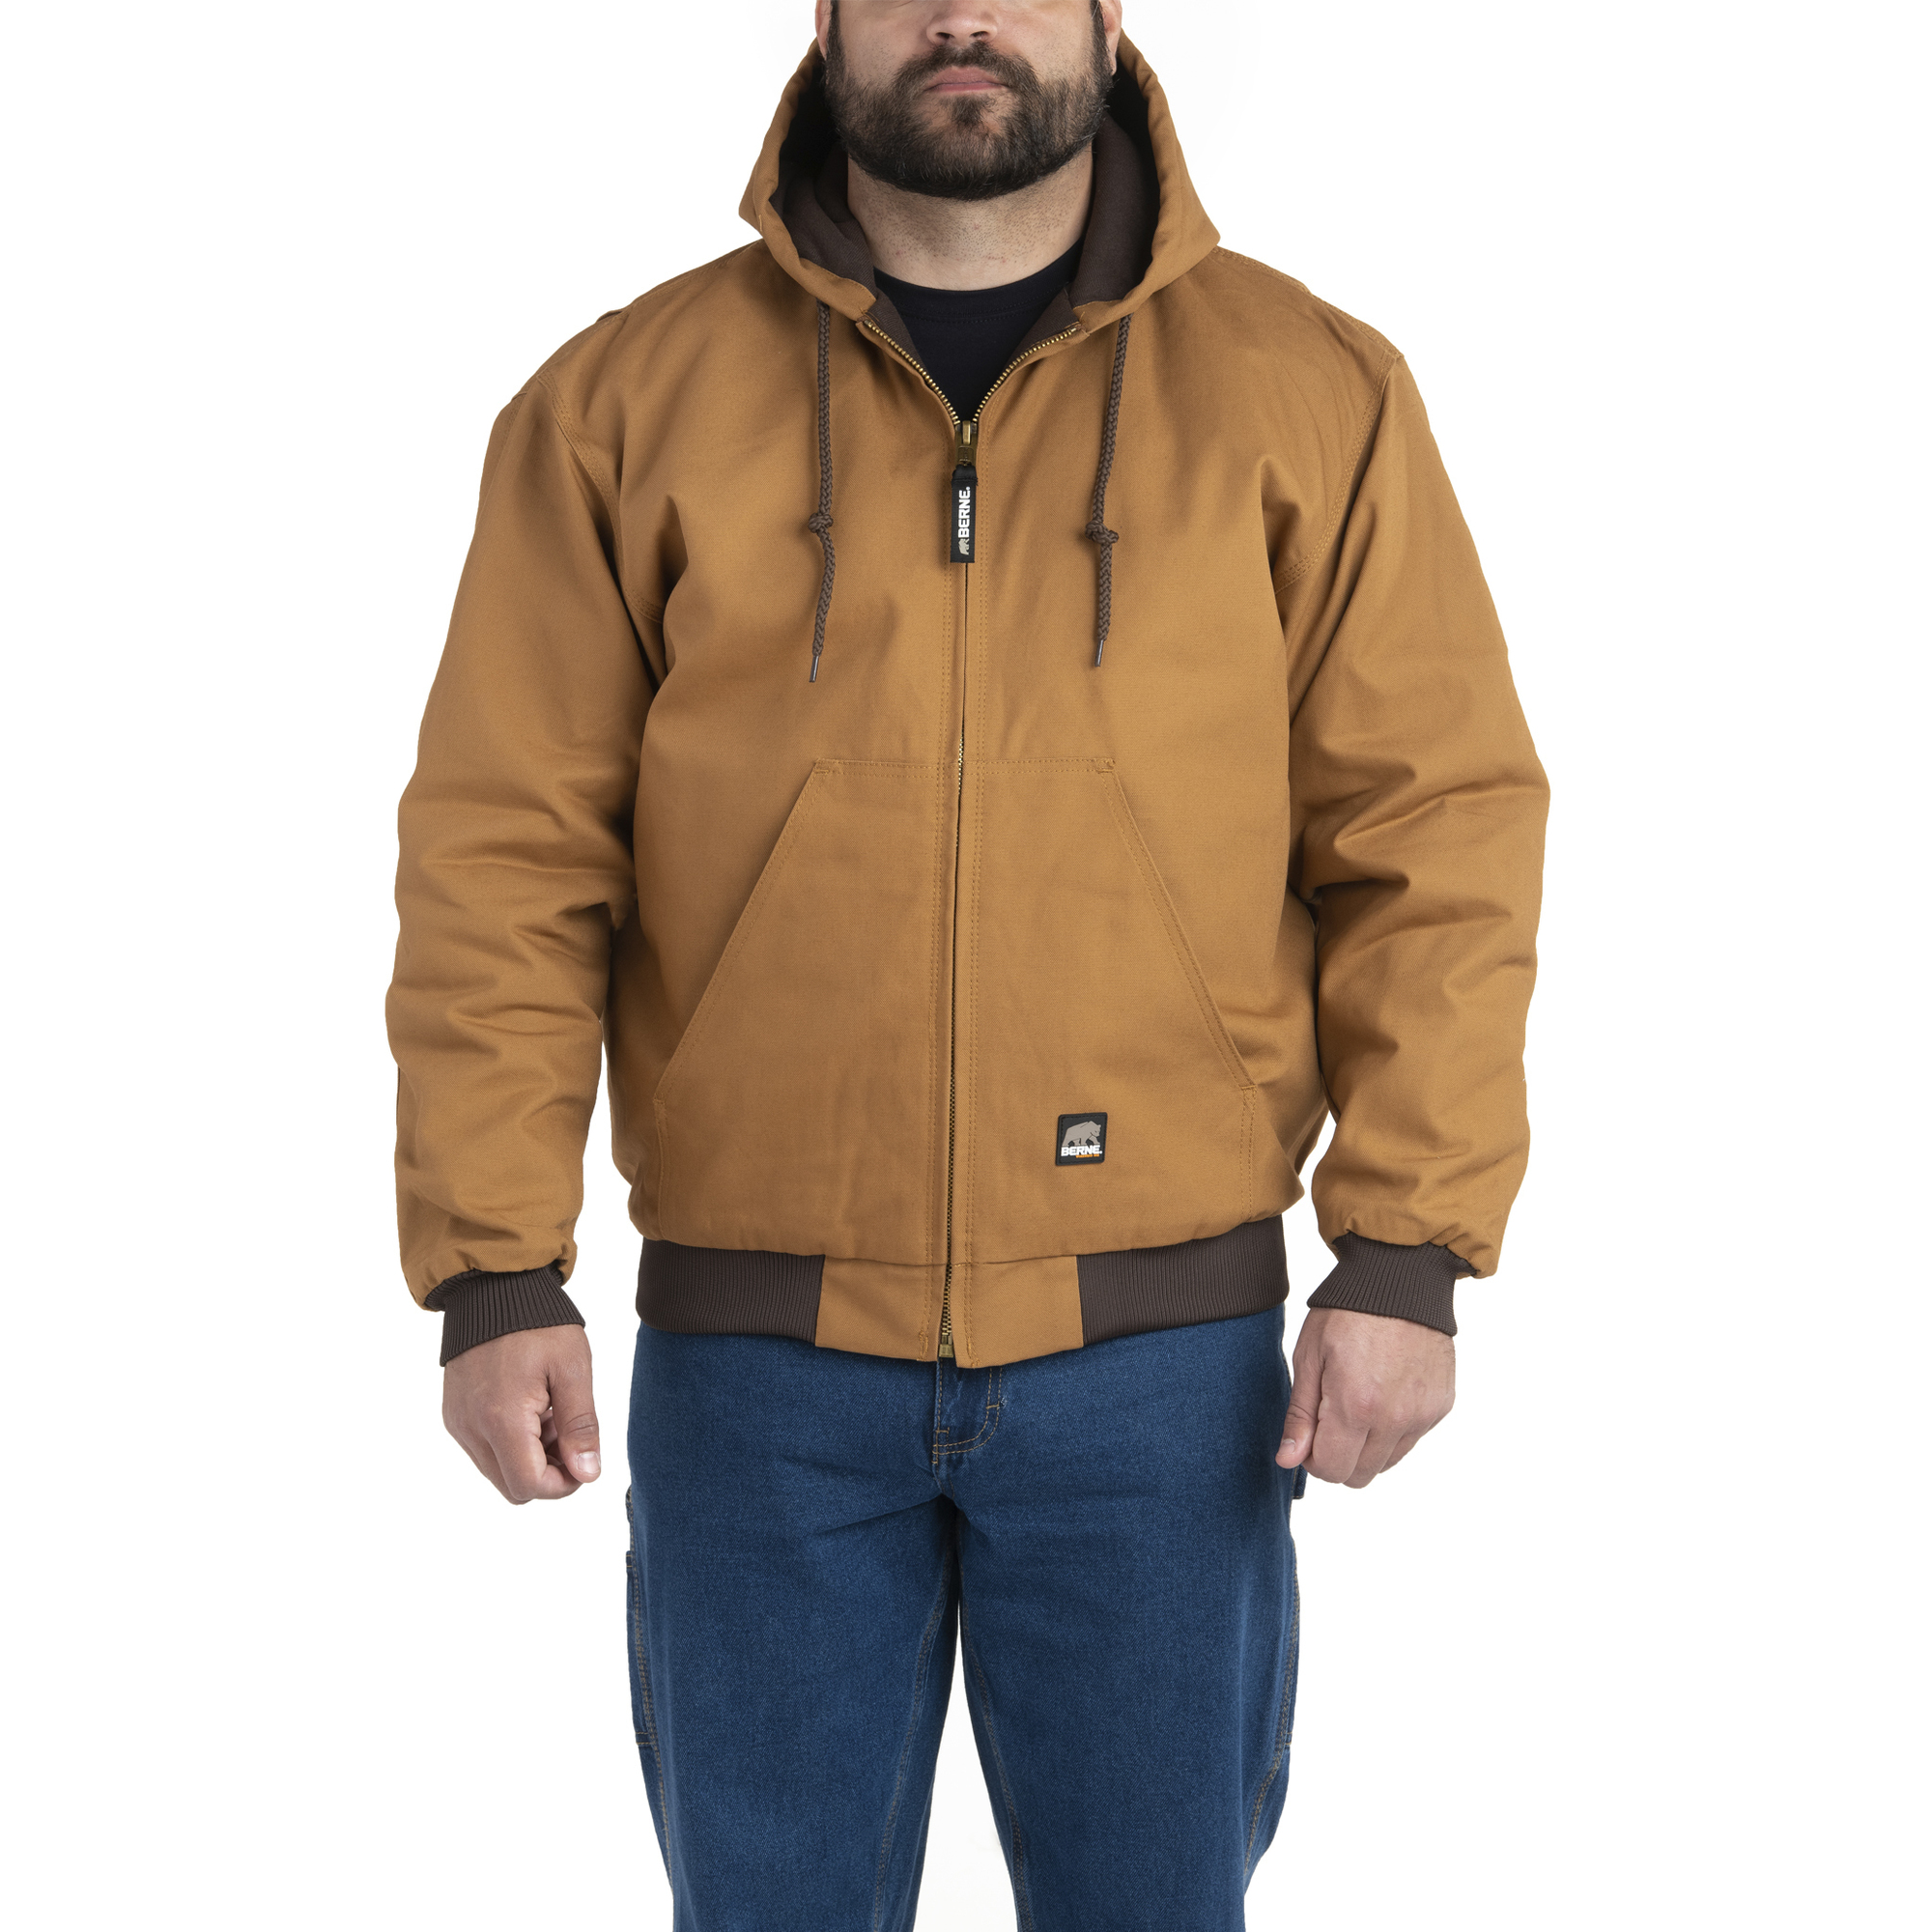 Berne Apparel, Heritage Hooded Jacket, Size 3XLT, Color Brown Duck, Model HJ51